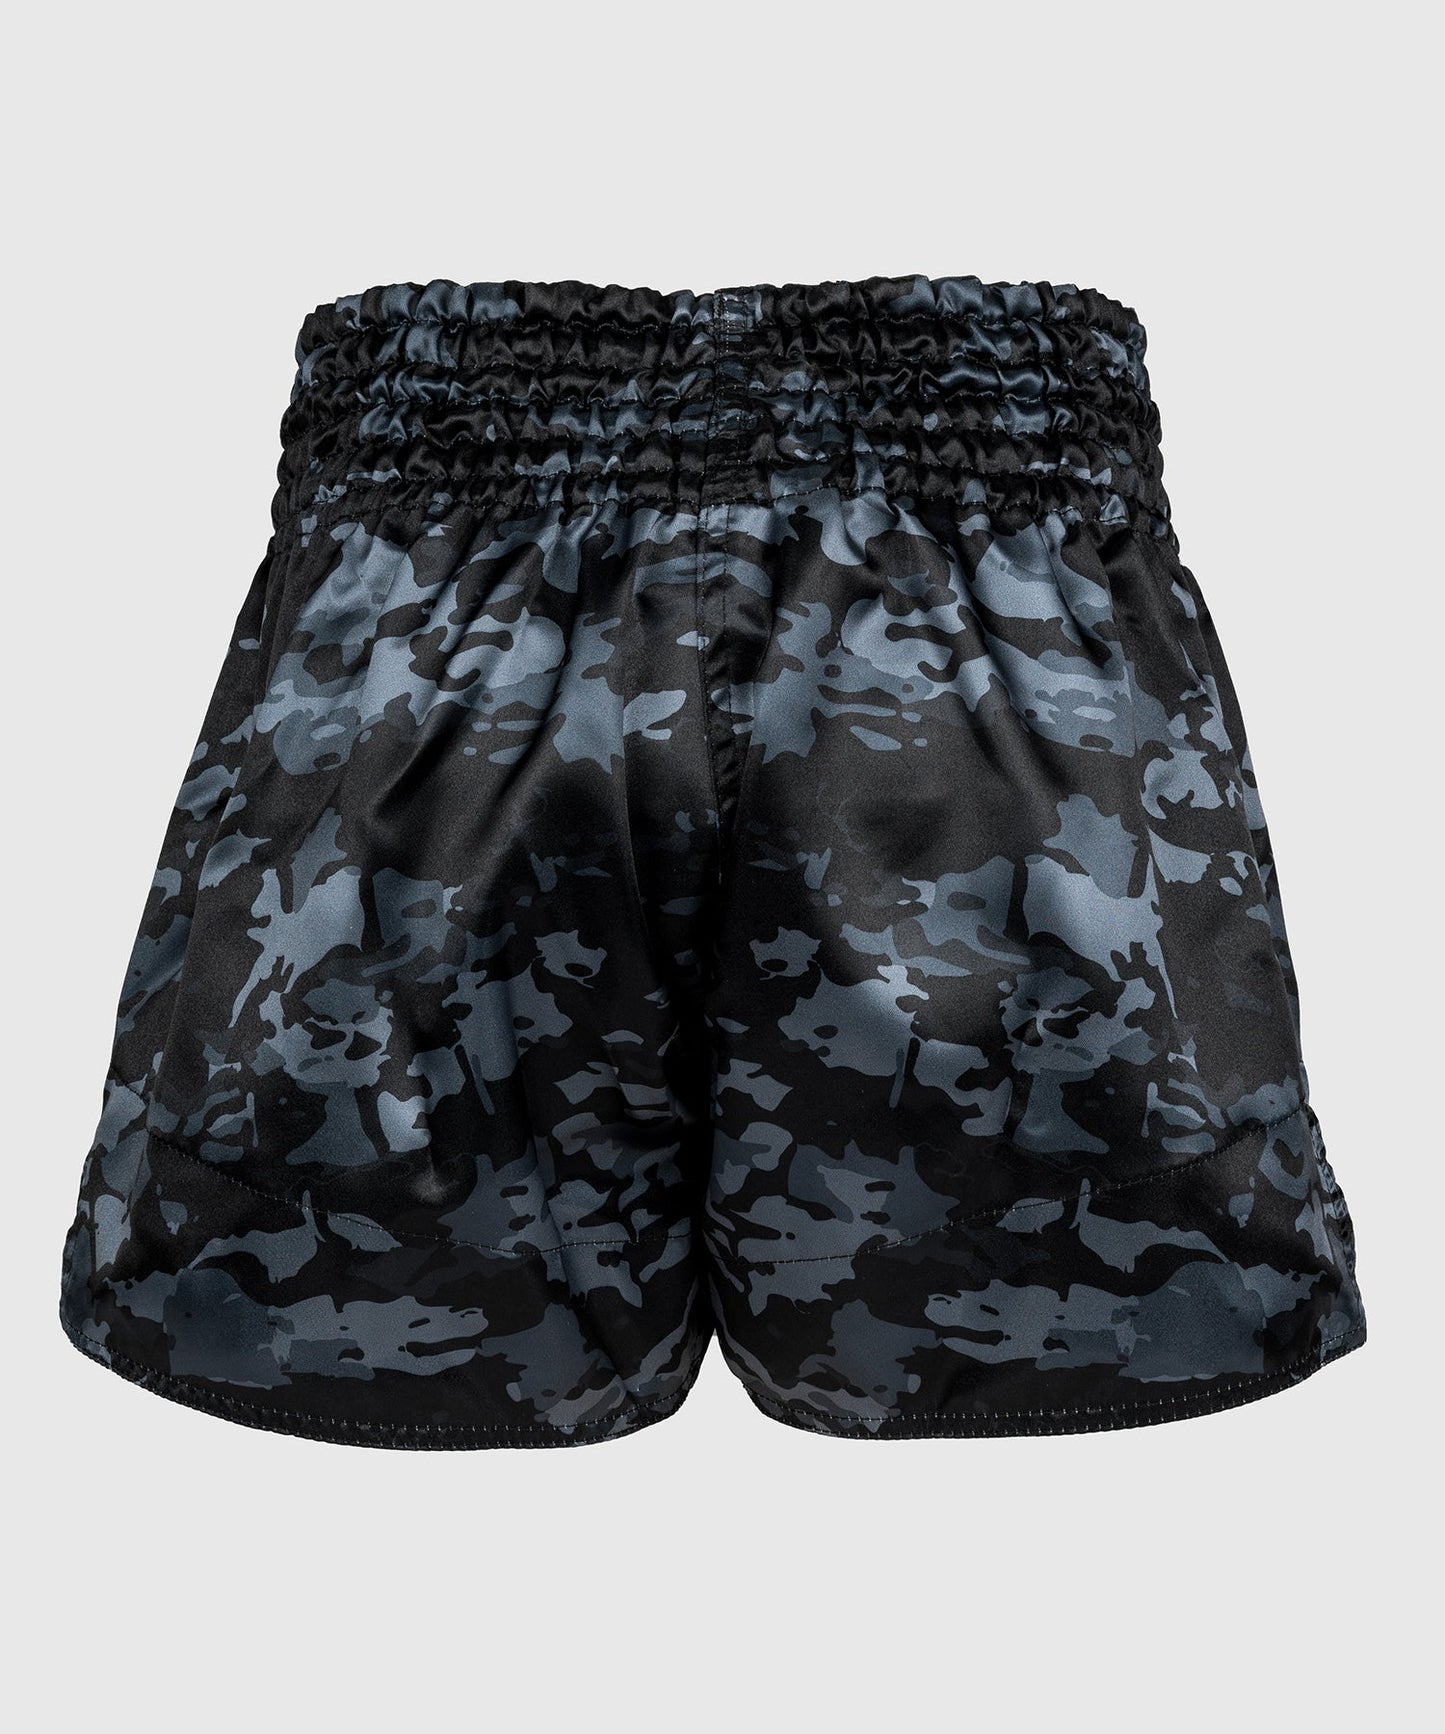 Venum Classic Muay Thai Shorts - Dark Camo